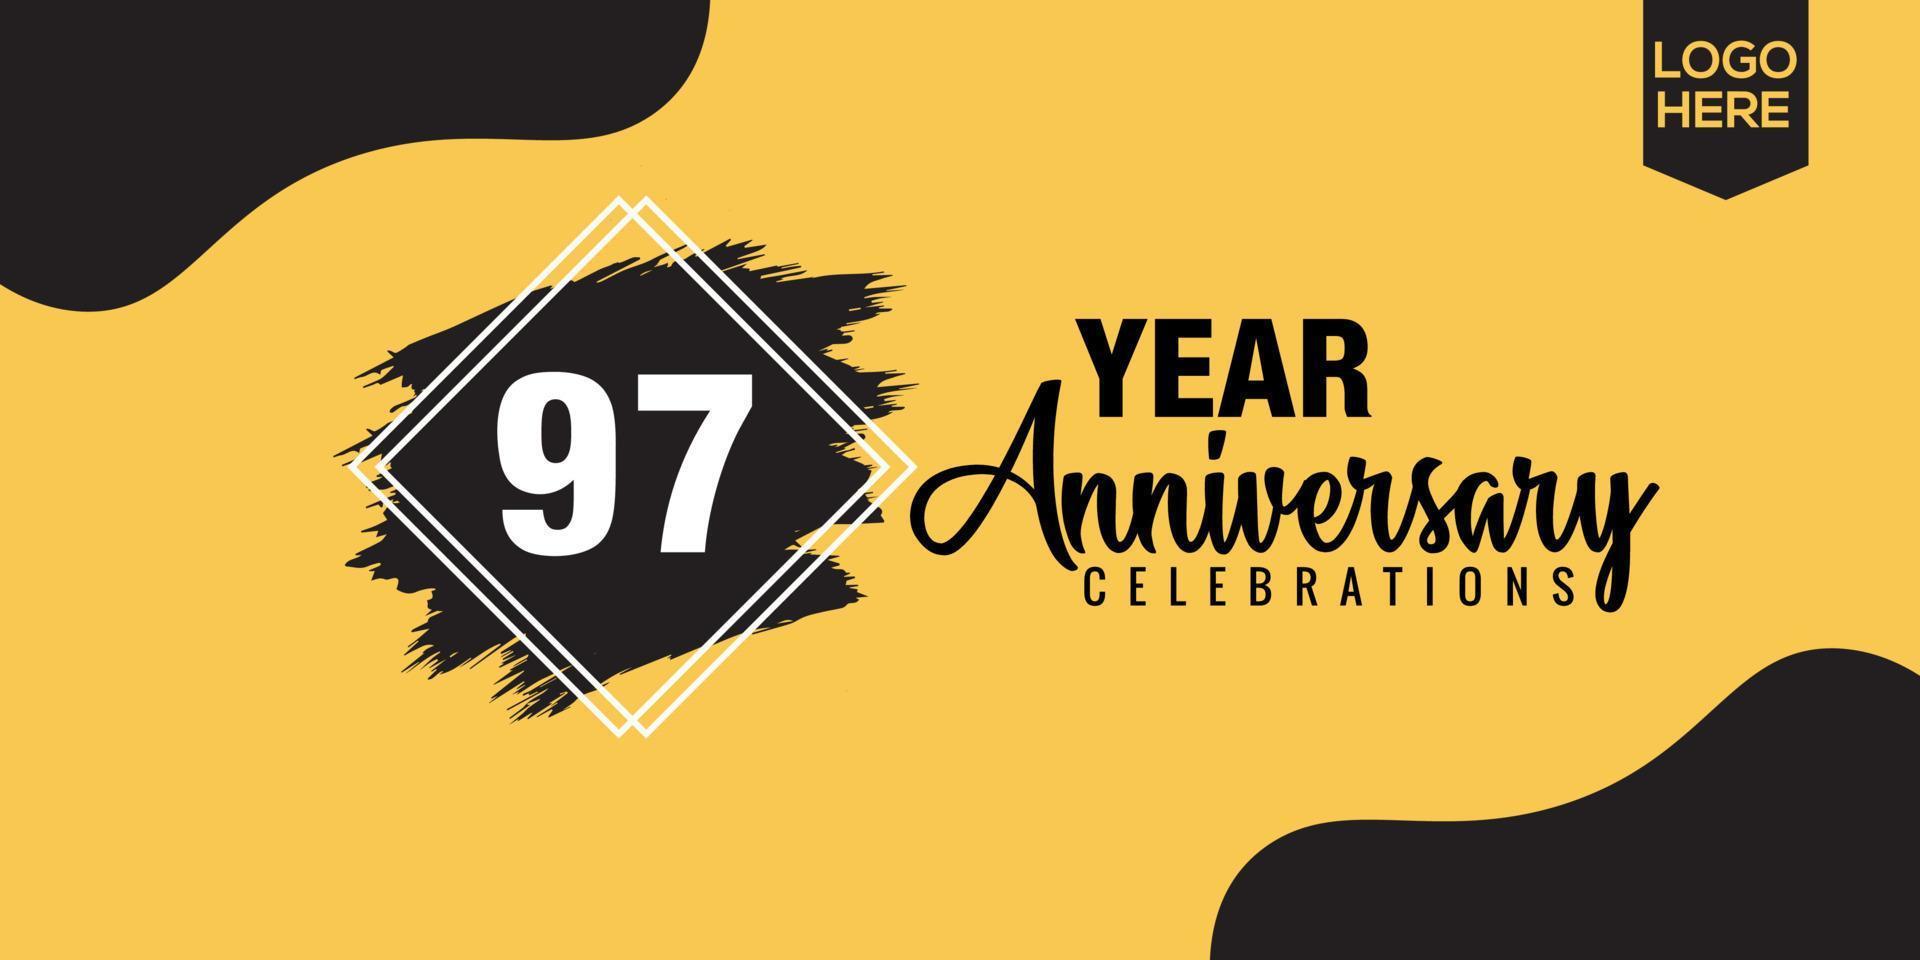 97th anni anniversario celebrazione logo design con nero spazzola e giallo colore con nero astratto vettore illustrazione